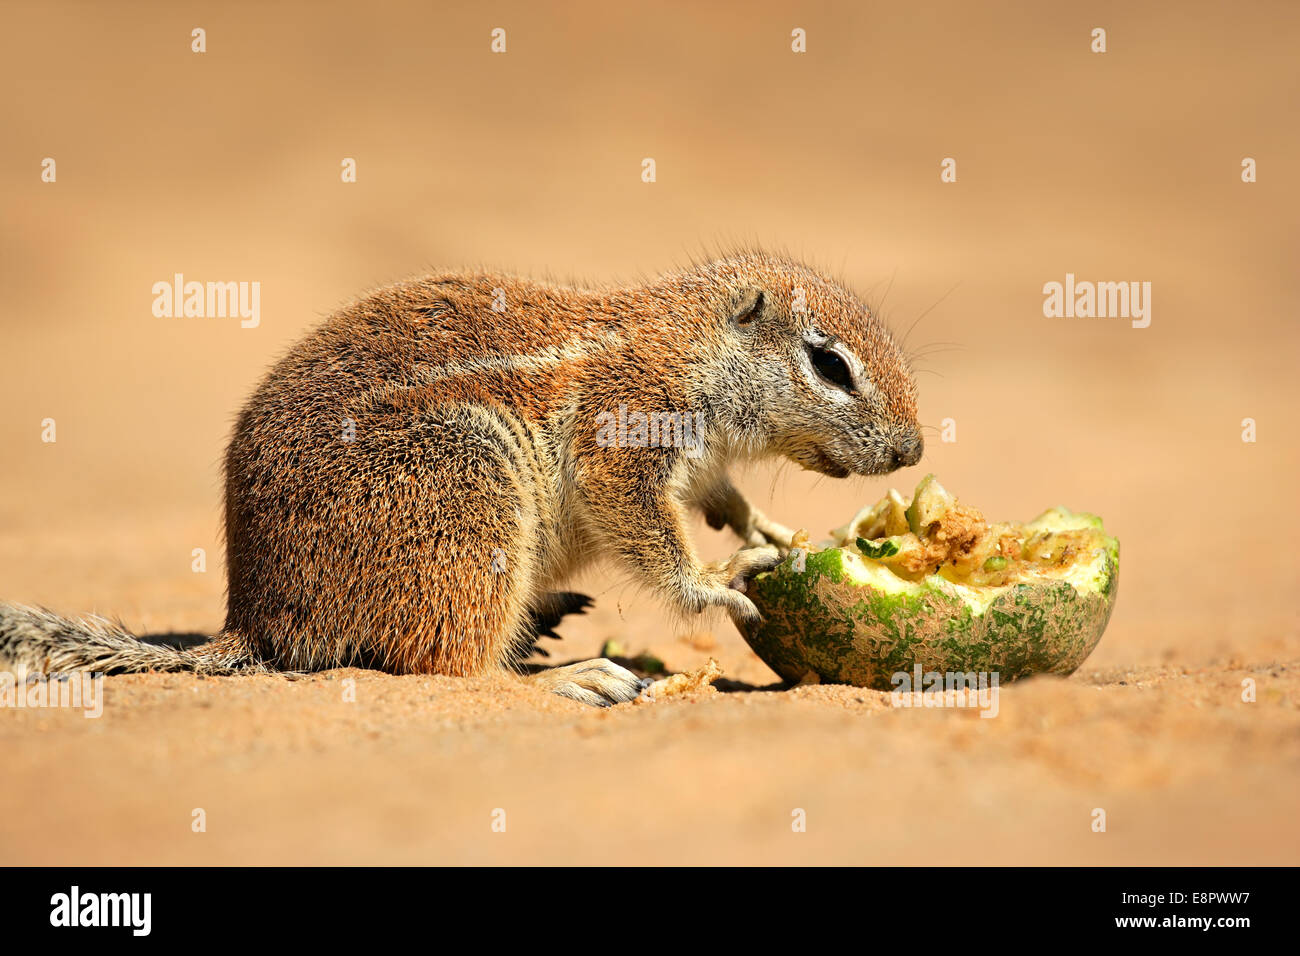 Feeding ground squirrel (Xerus inaurus), Kalahari desert, South Africa Stock Photo